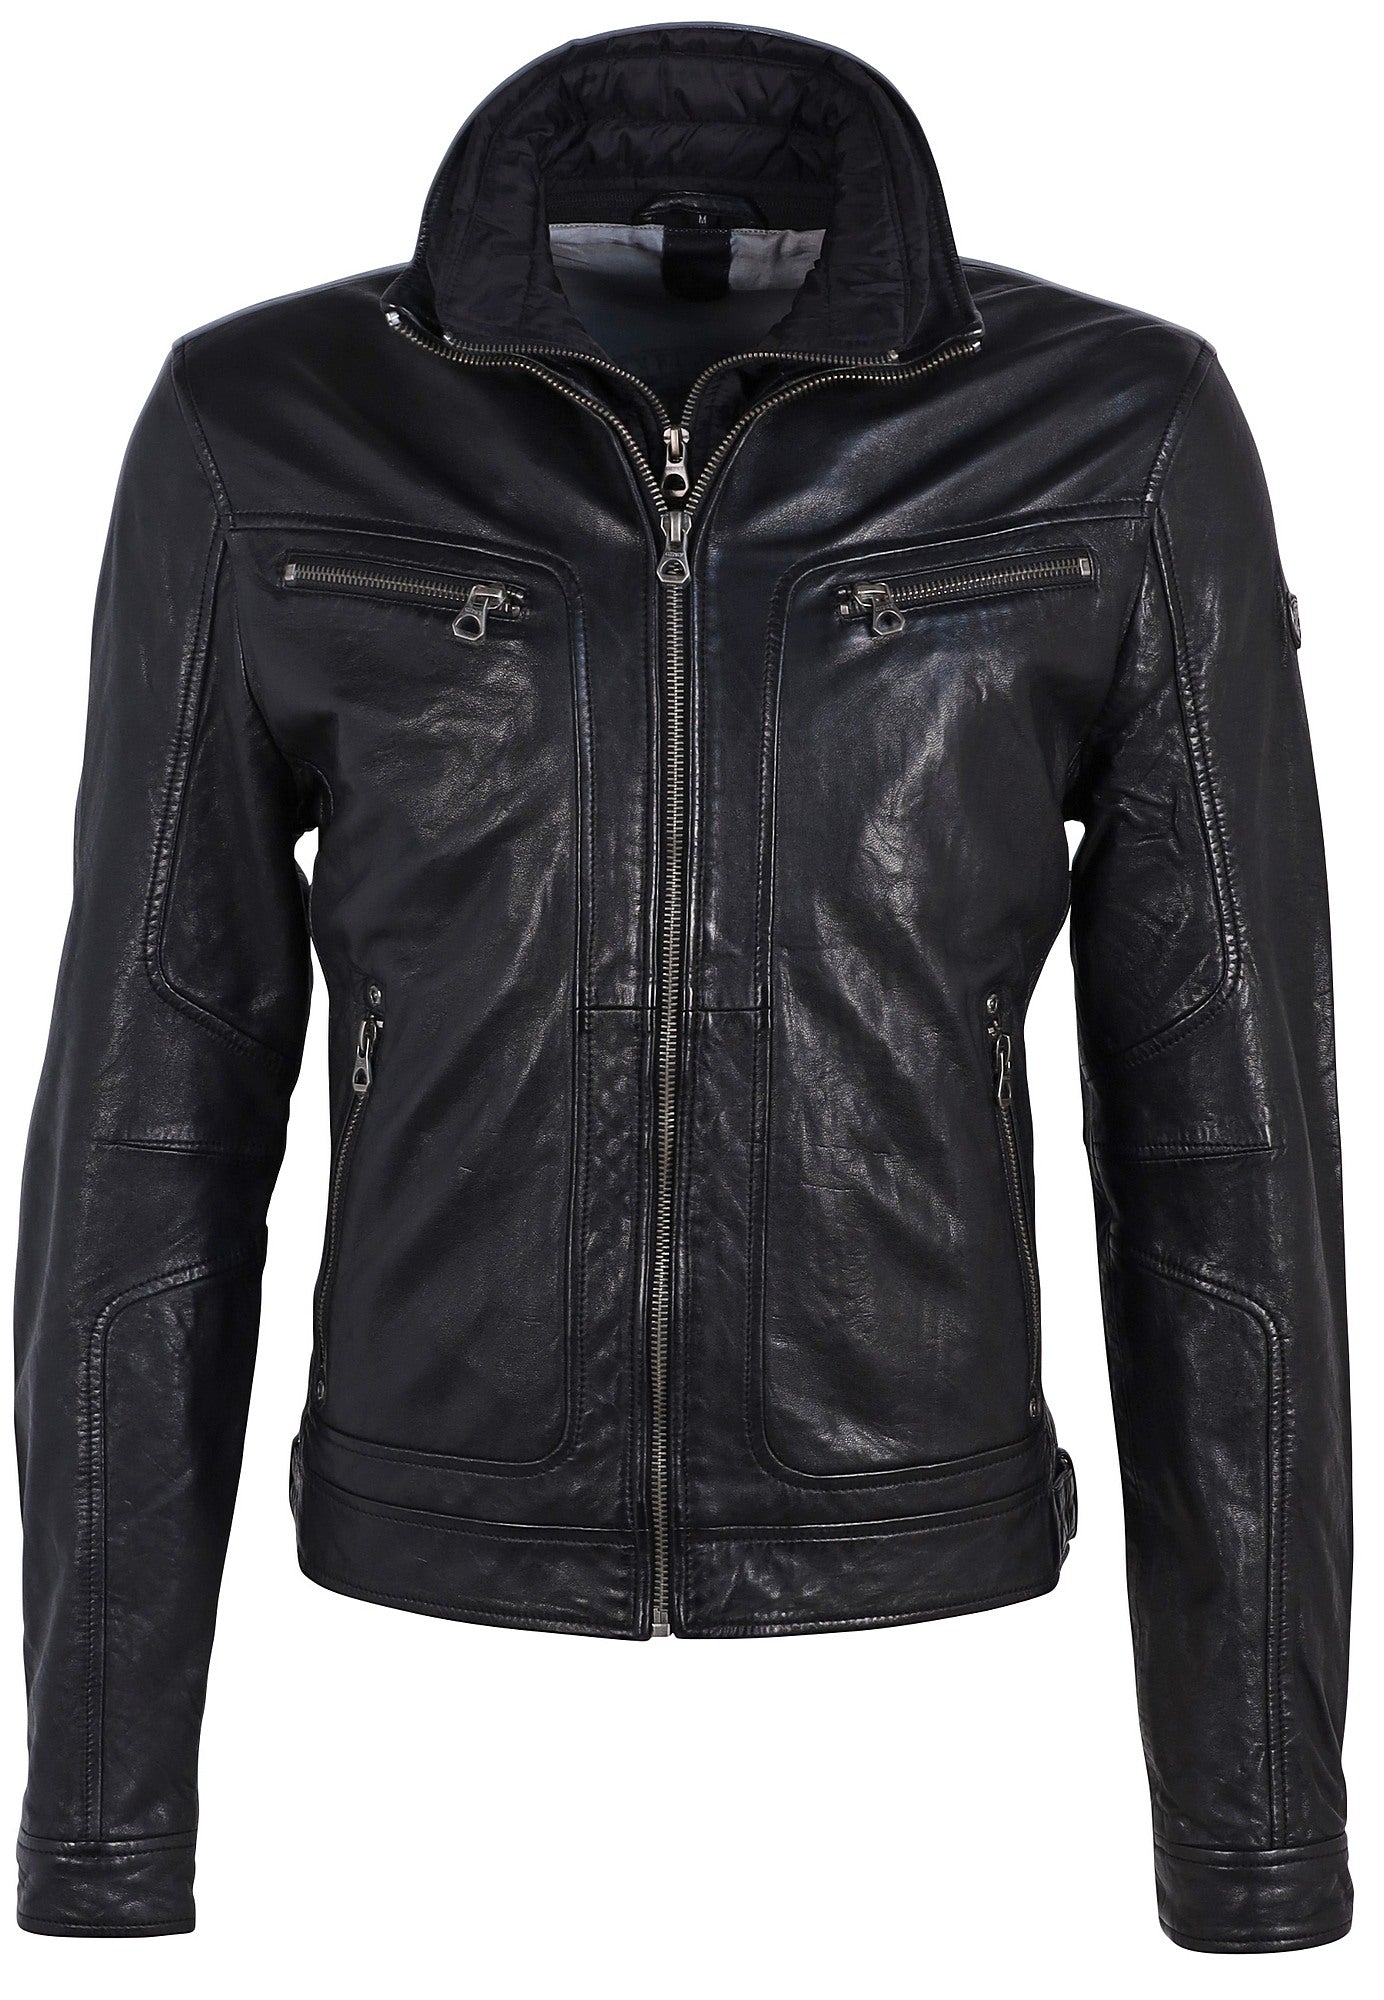 Bain CF Leather Jacket, Black